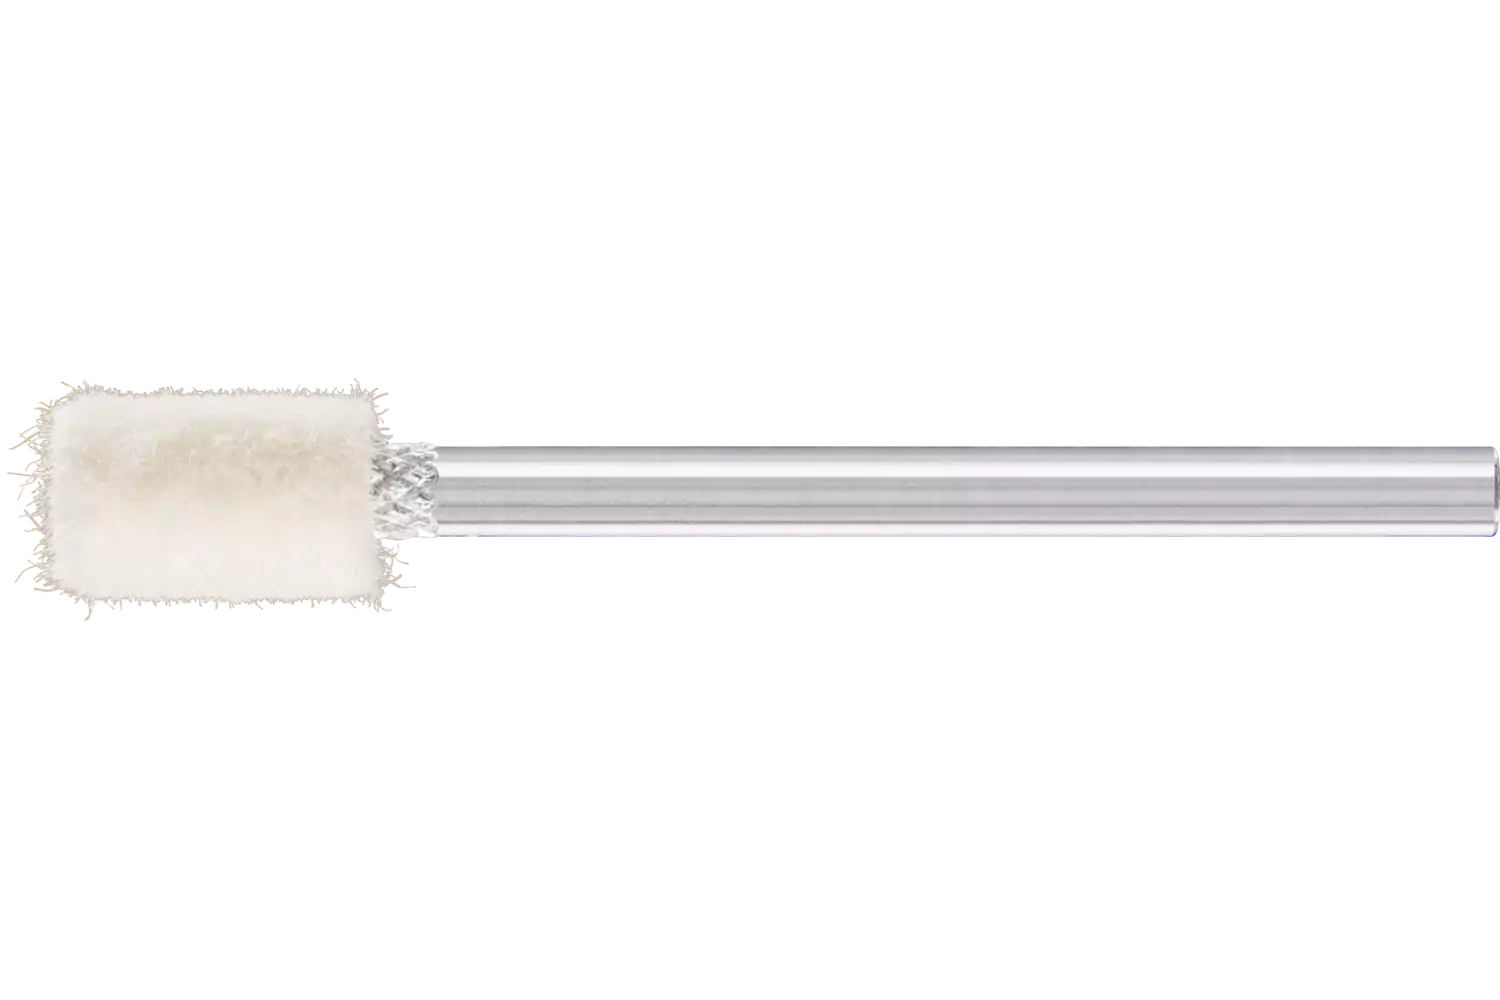 Feltri con gambo per lucidare medio-duri forma cilindrica Ø 6x10 mm, gambo Ø 3 mm 1